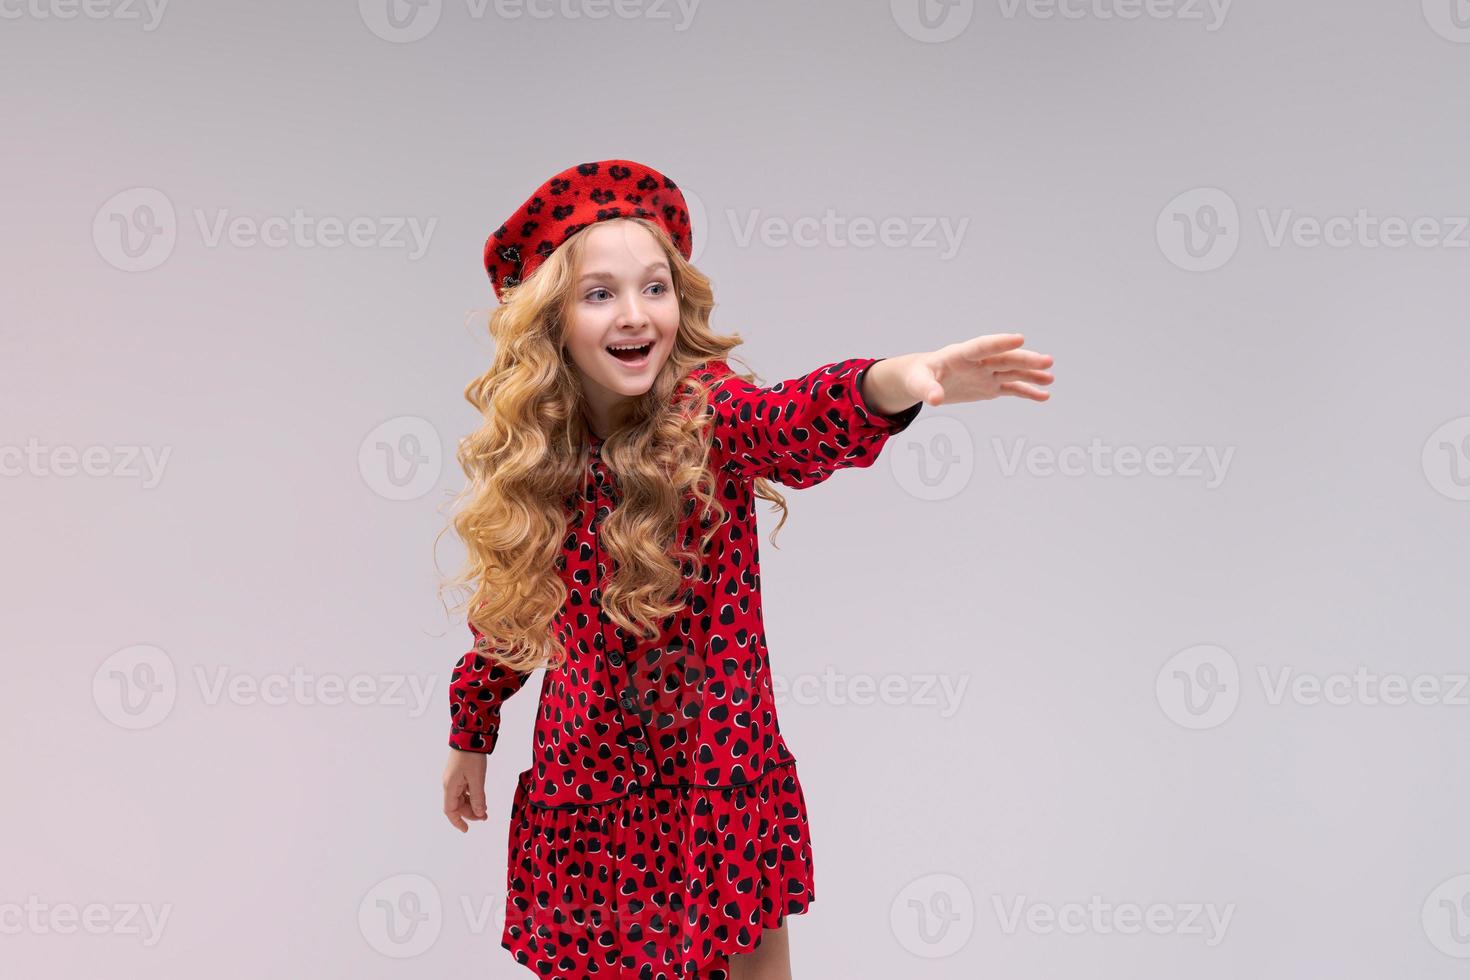 klein meisje in Franse stijl hoed wijst haar vinger naar de andere kant. gelukkig meisje met lange foto